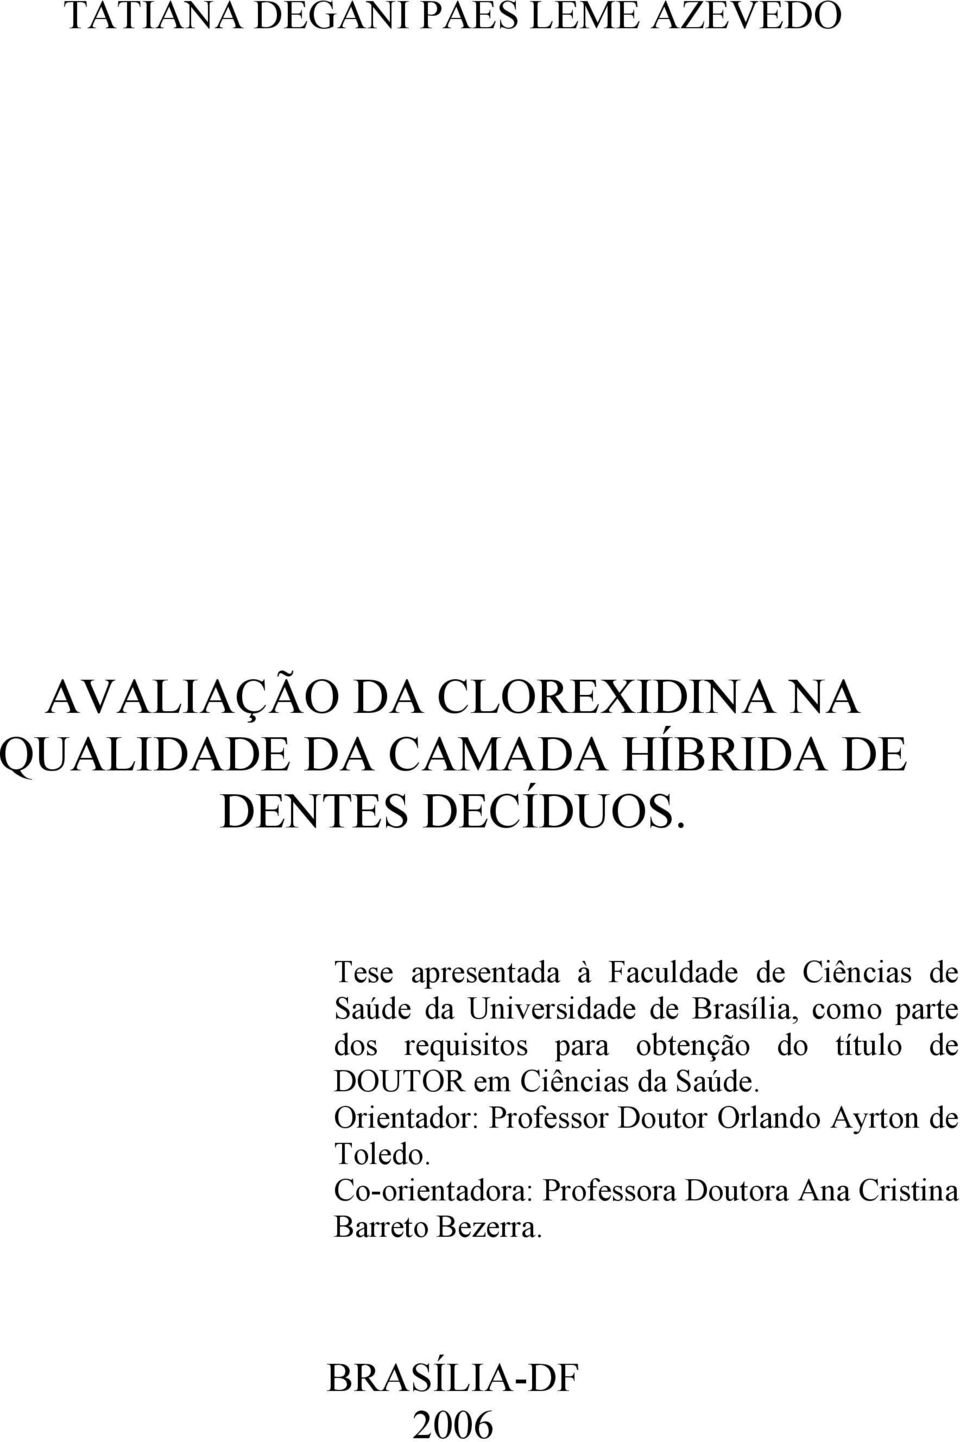 Tese apresentada à Faculdade de Ciências de Saúde da Universidade de Brasília, como parte dos